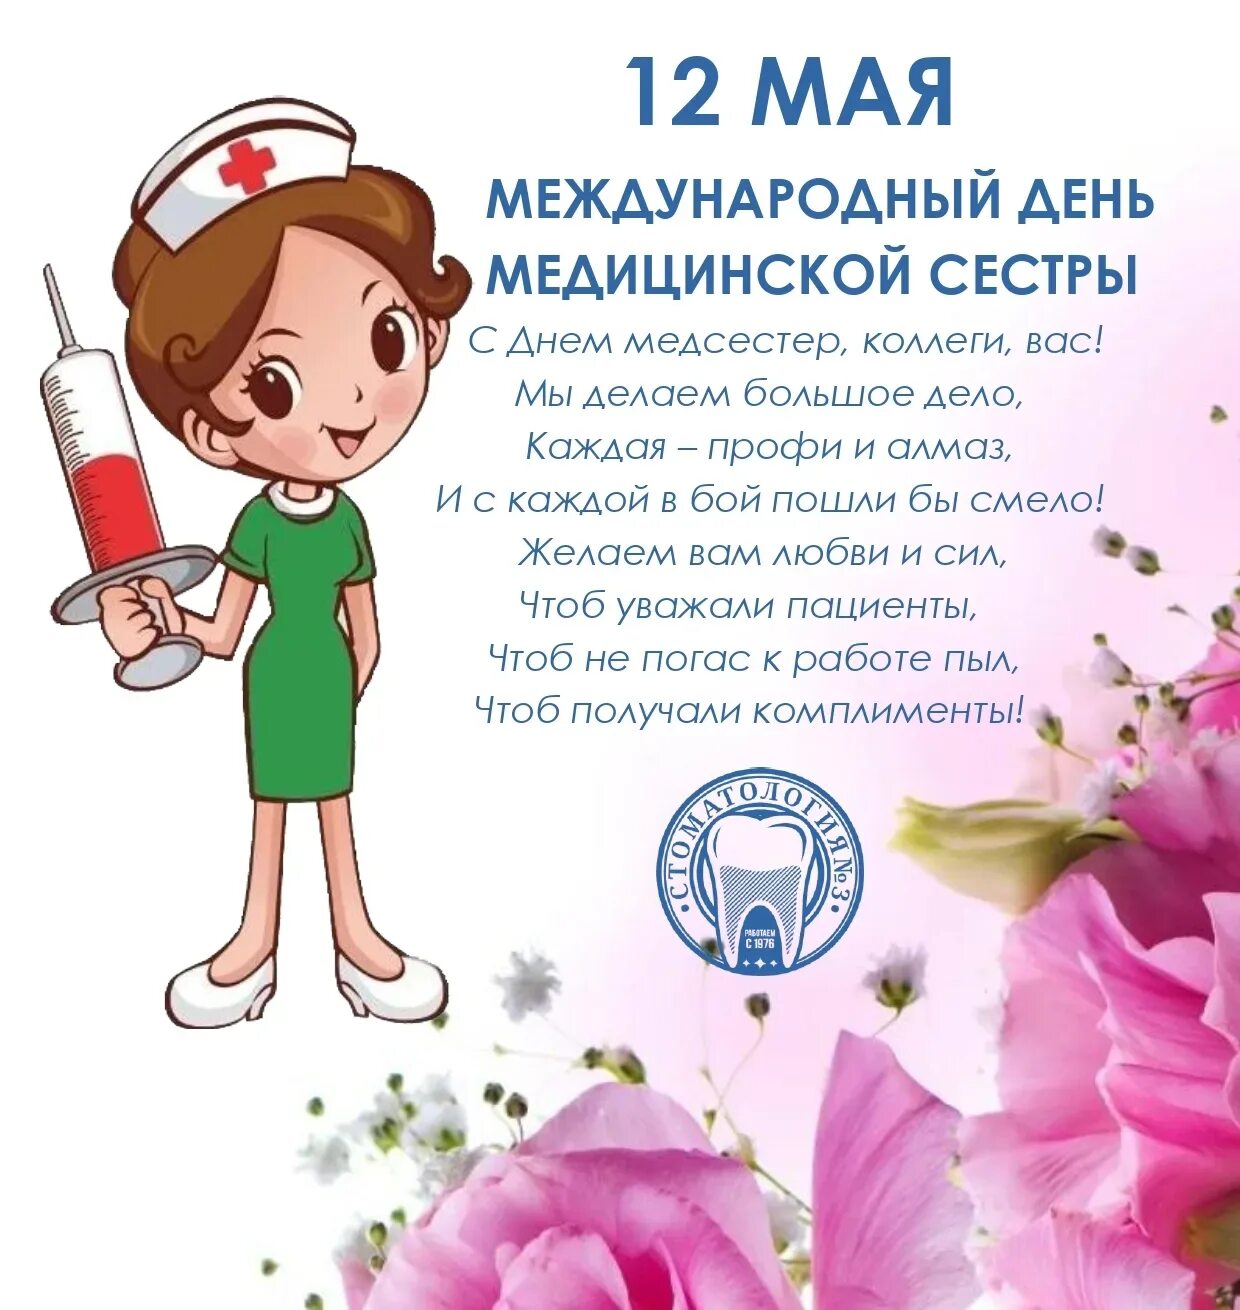 12 мая праздник в россии. Поздравления с днём медсестры. С днём медицинской сестры поздравления. Поздравительные открытки с днем медсестры. С днём медицинской сестры поздравления открытки.